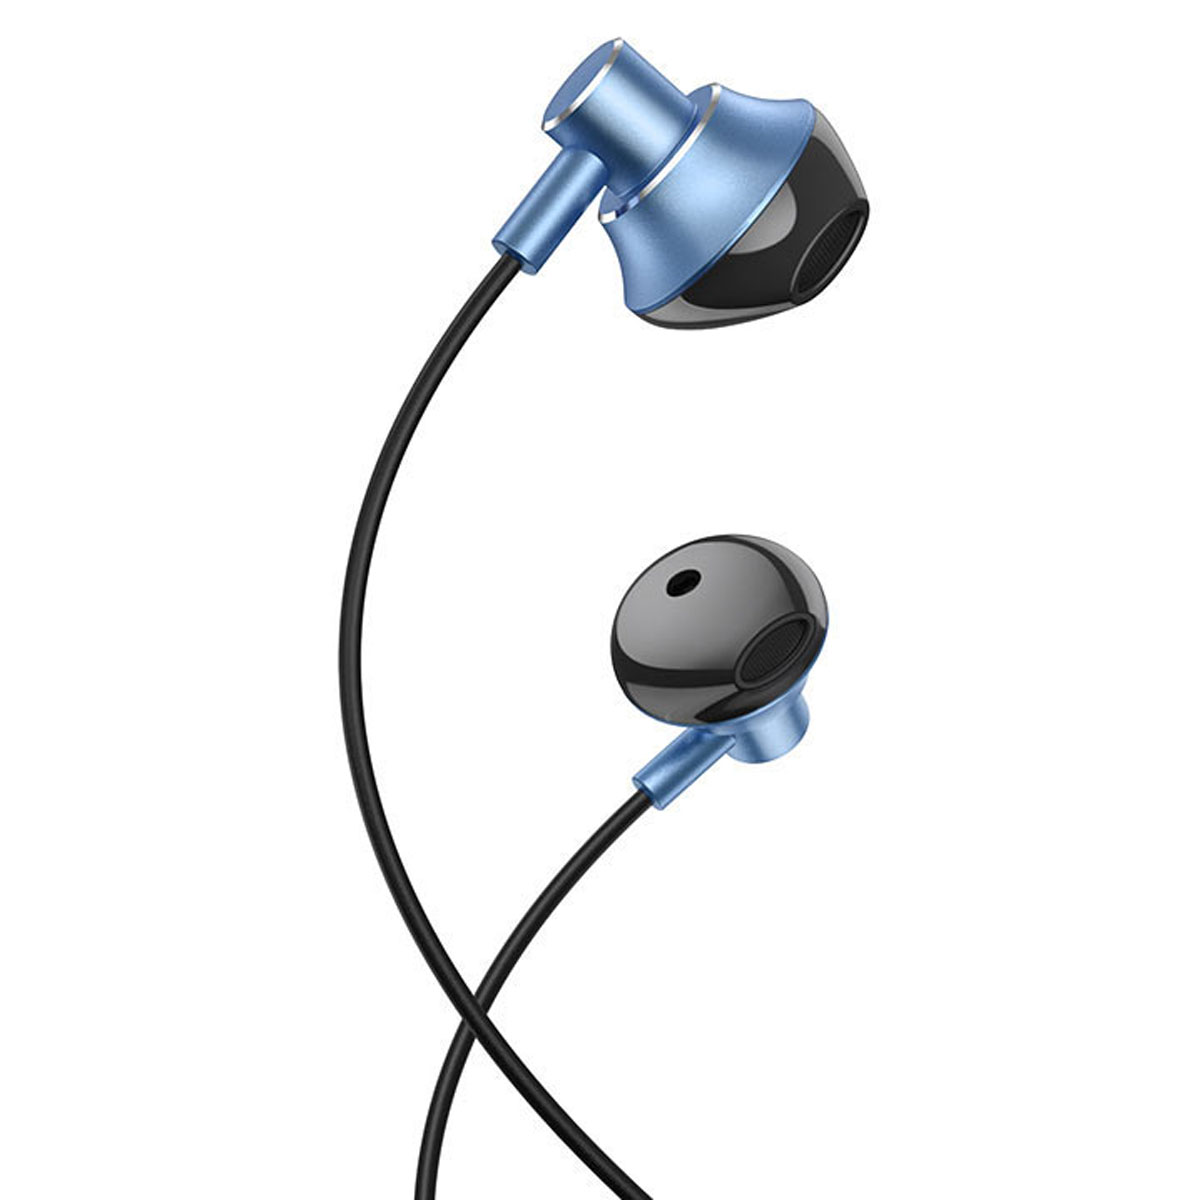 Гарнитура (наушники с микрофоном) проводная, HOCO M75 Belle, цвет синий